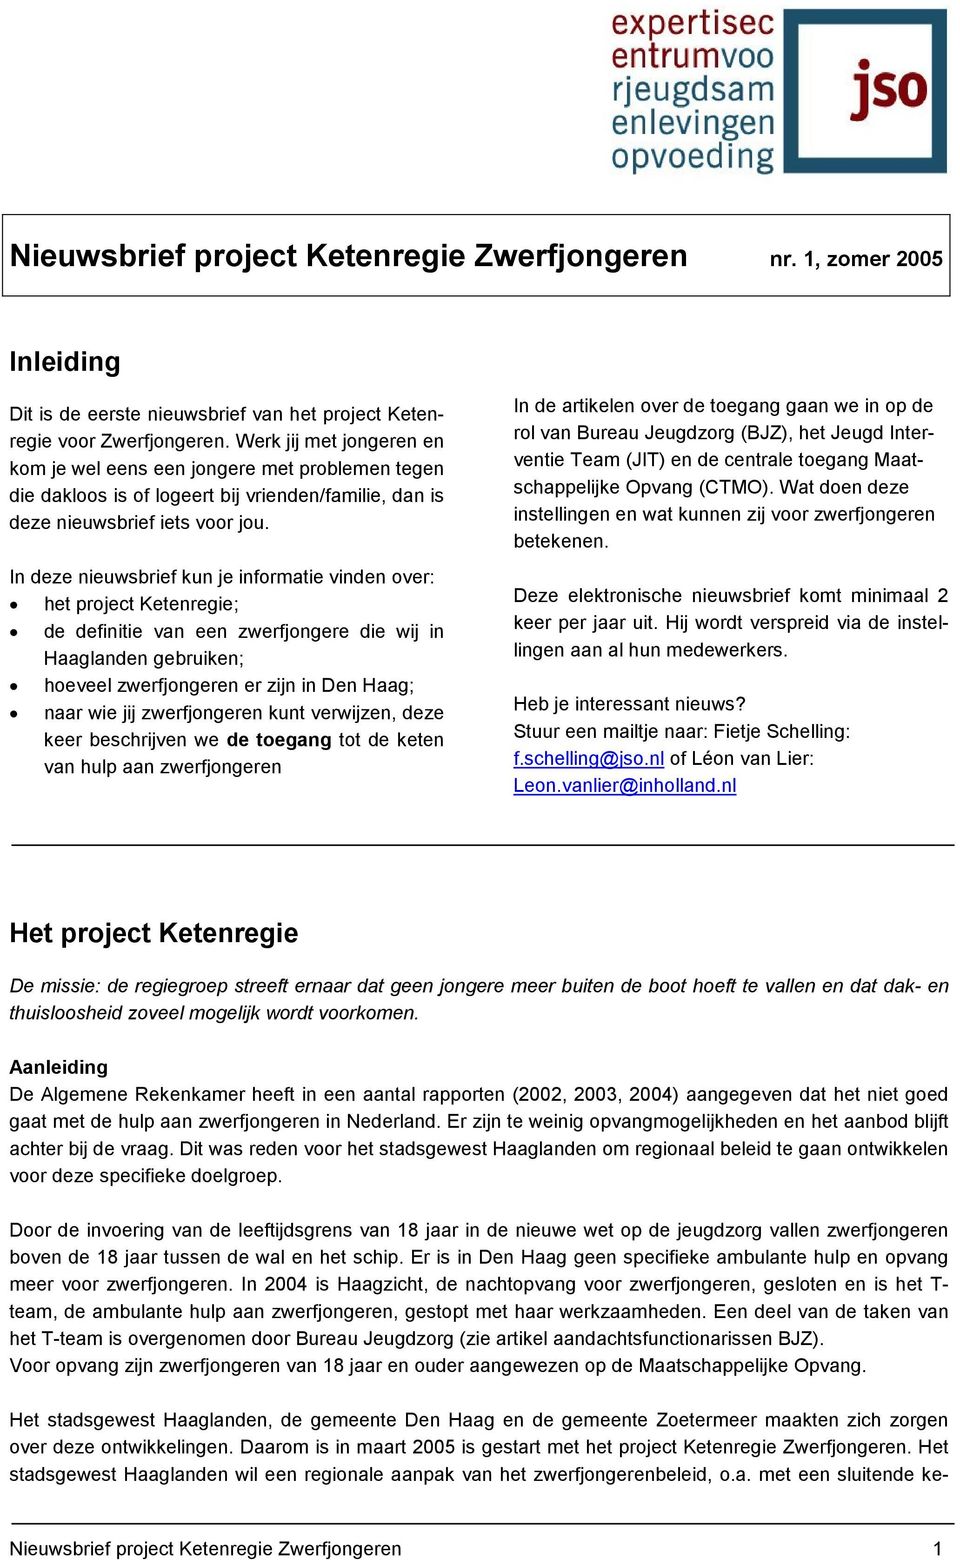 In deze nieuwsbrief kun je informatie vinden over: het project Ketenregie; de definitie van een zwerfjongere die wij in Haaglanden gebruiken; hoeveel zwerfjongeren er zijn in Den Haag; naar wie jij